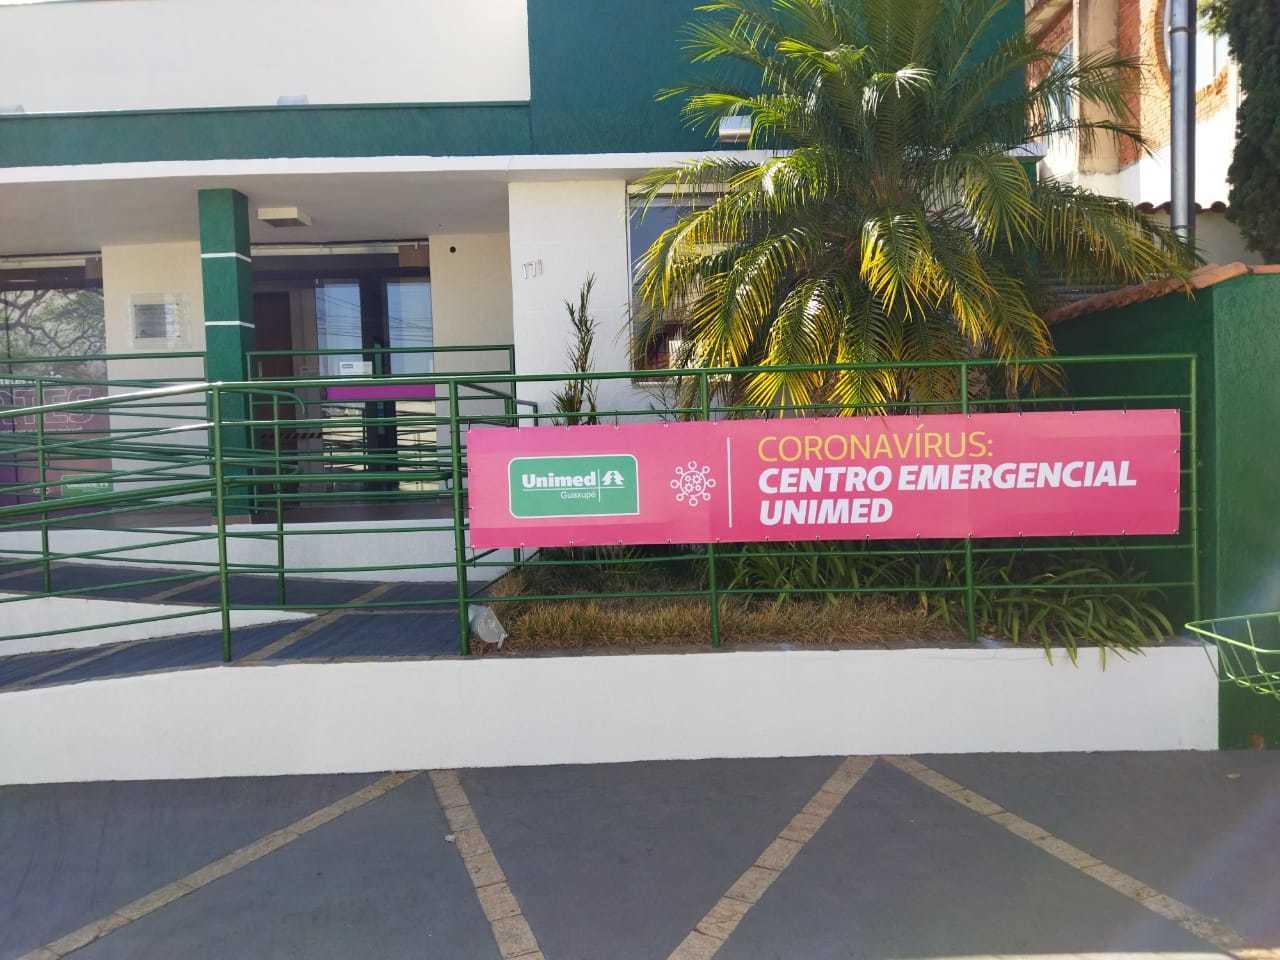 Frente da Unimed Guaxupé. Em um banner está escrito "Coronavírus: Centro Emergencial Unimed"